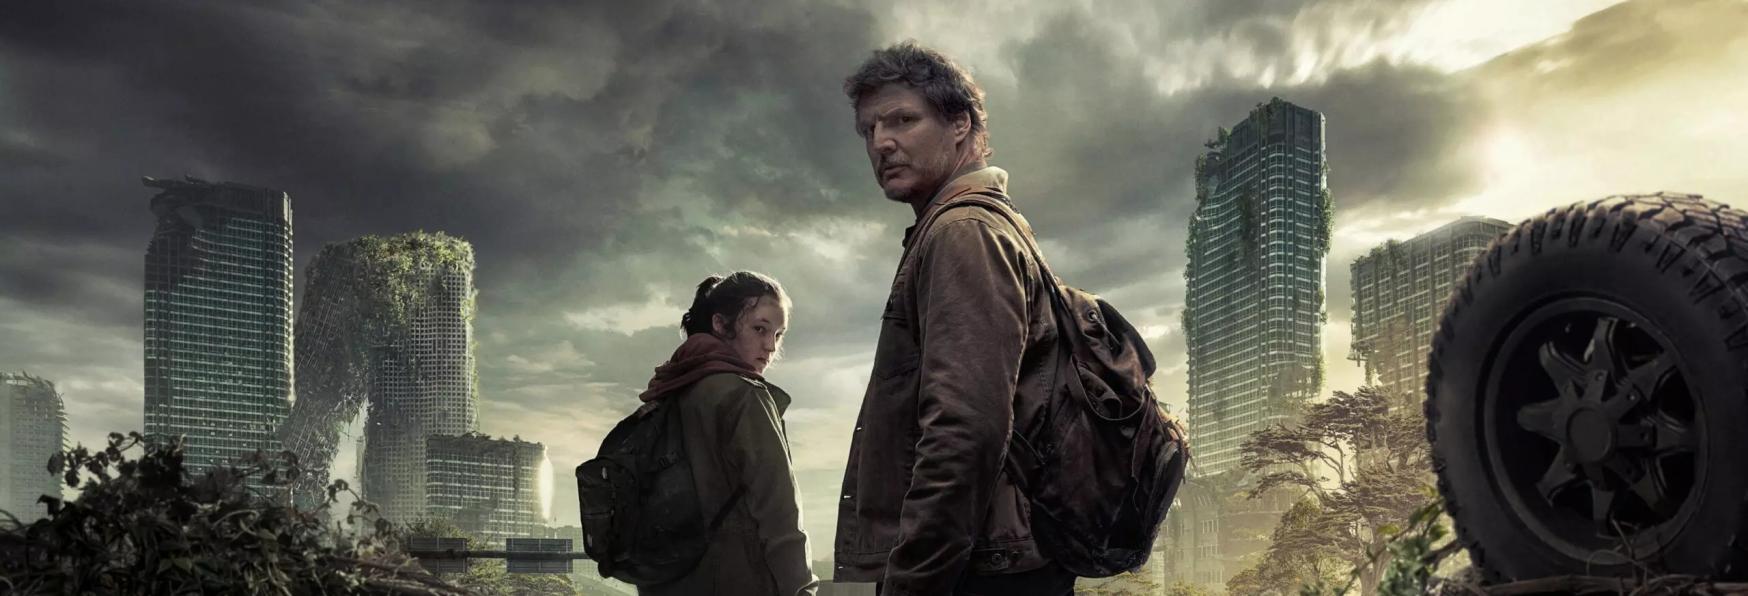 The Last of Us: la Serie TV ottiene il Punteggio Perfetto su Rotten Tomatoes